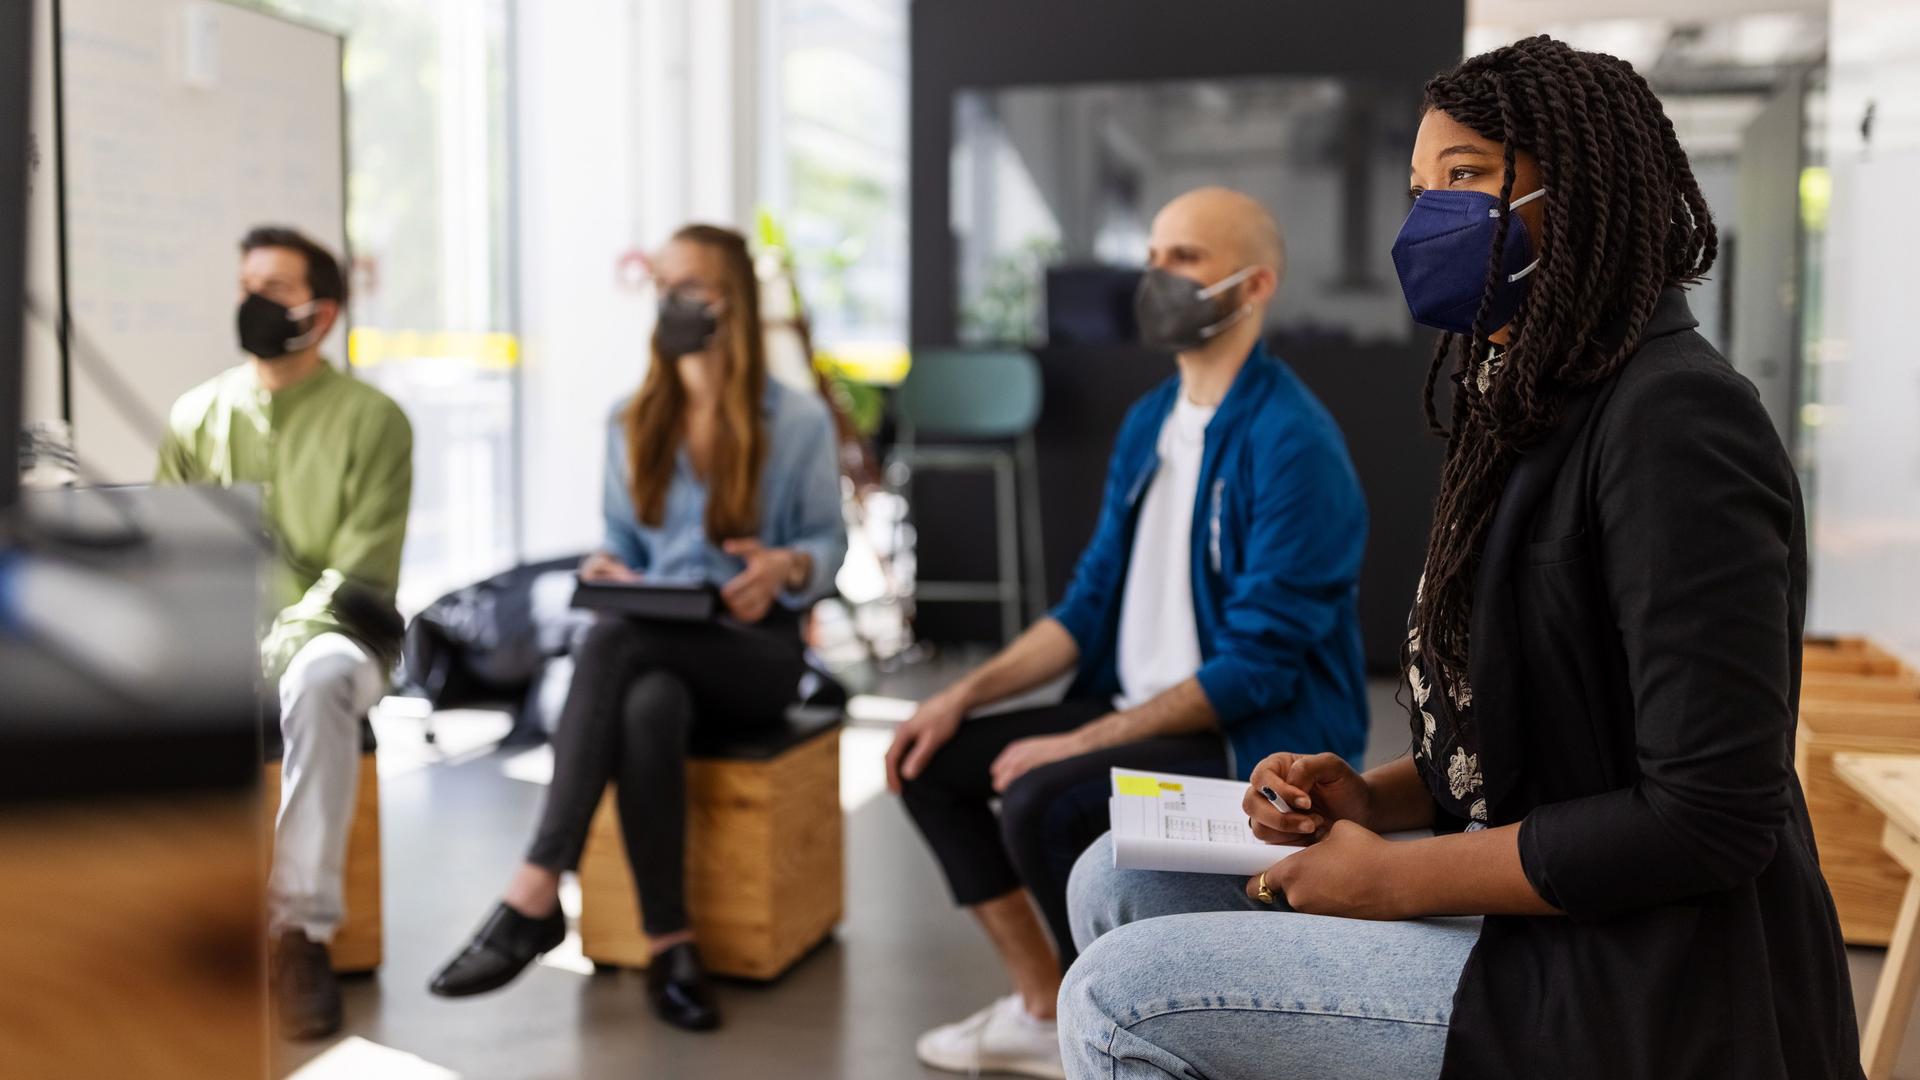 Frauen und Männer sitzen mit Gesichtsmasken auf Holzhockern in einem Büro. Sie gucken alle in eine Richtung auf einen Bildschirm.